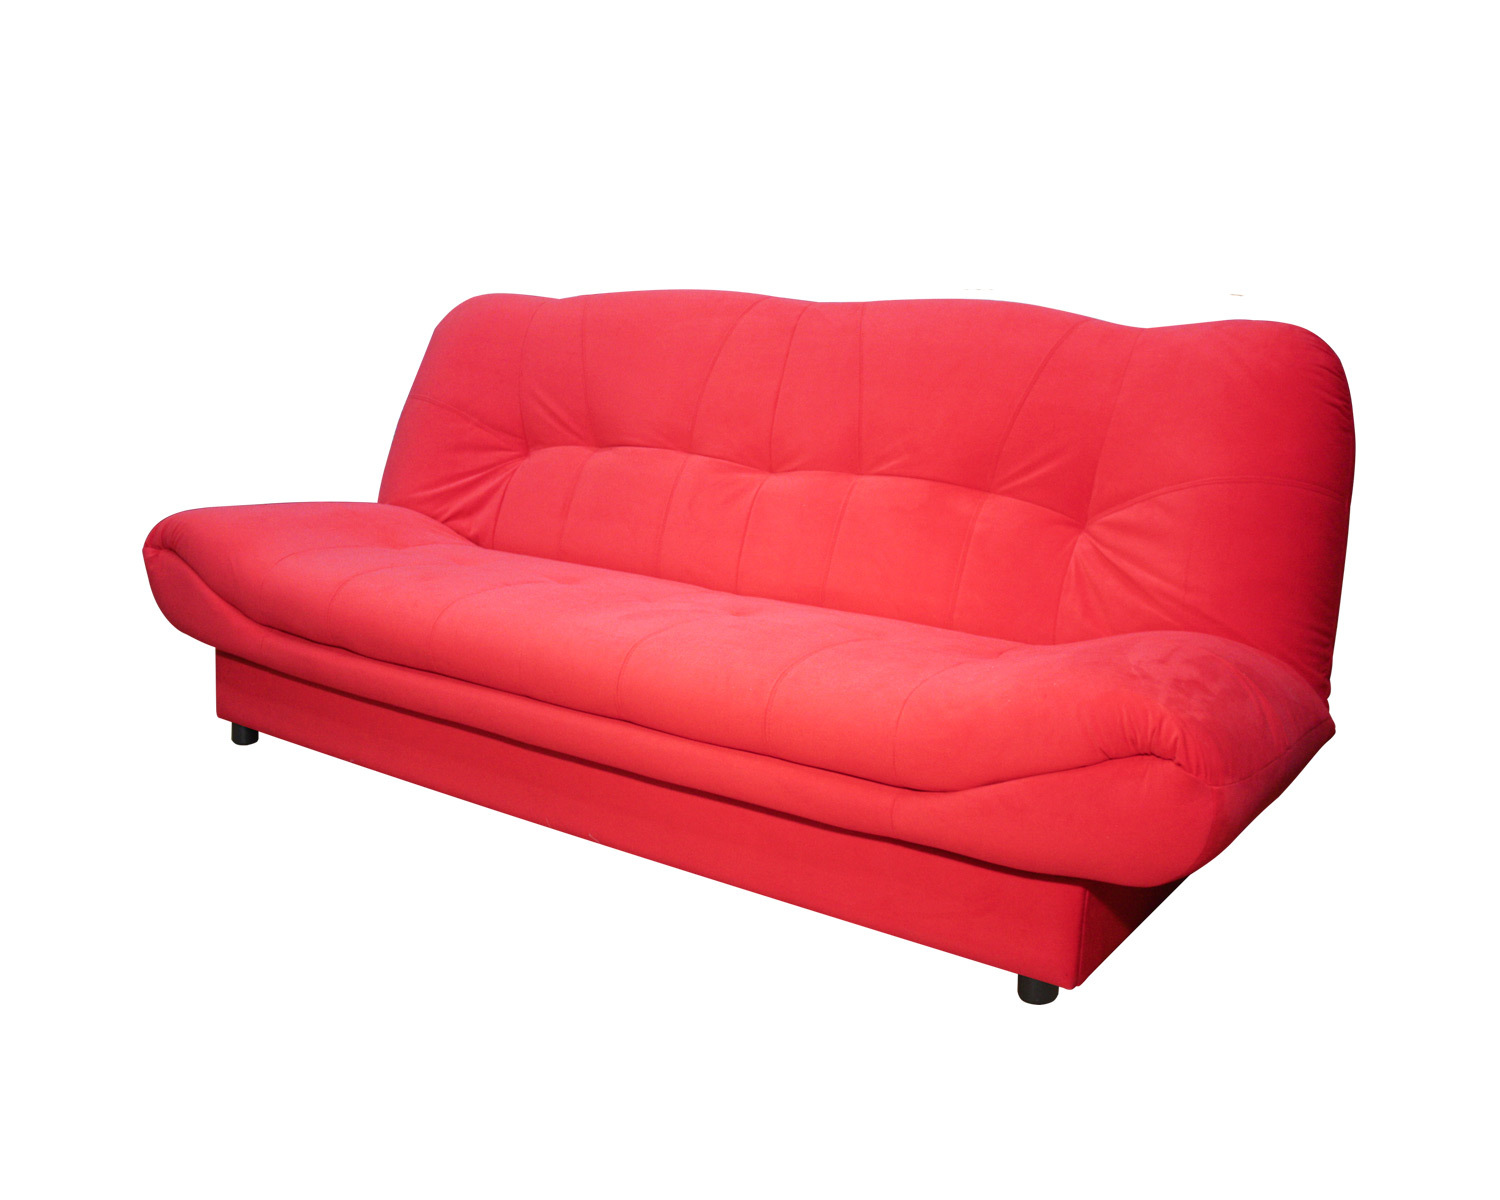 диван без подлокотников длина 190